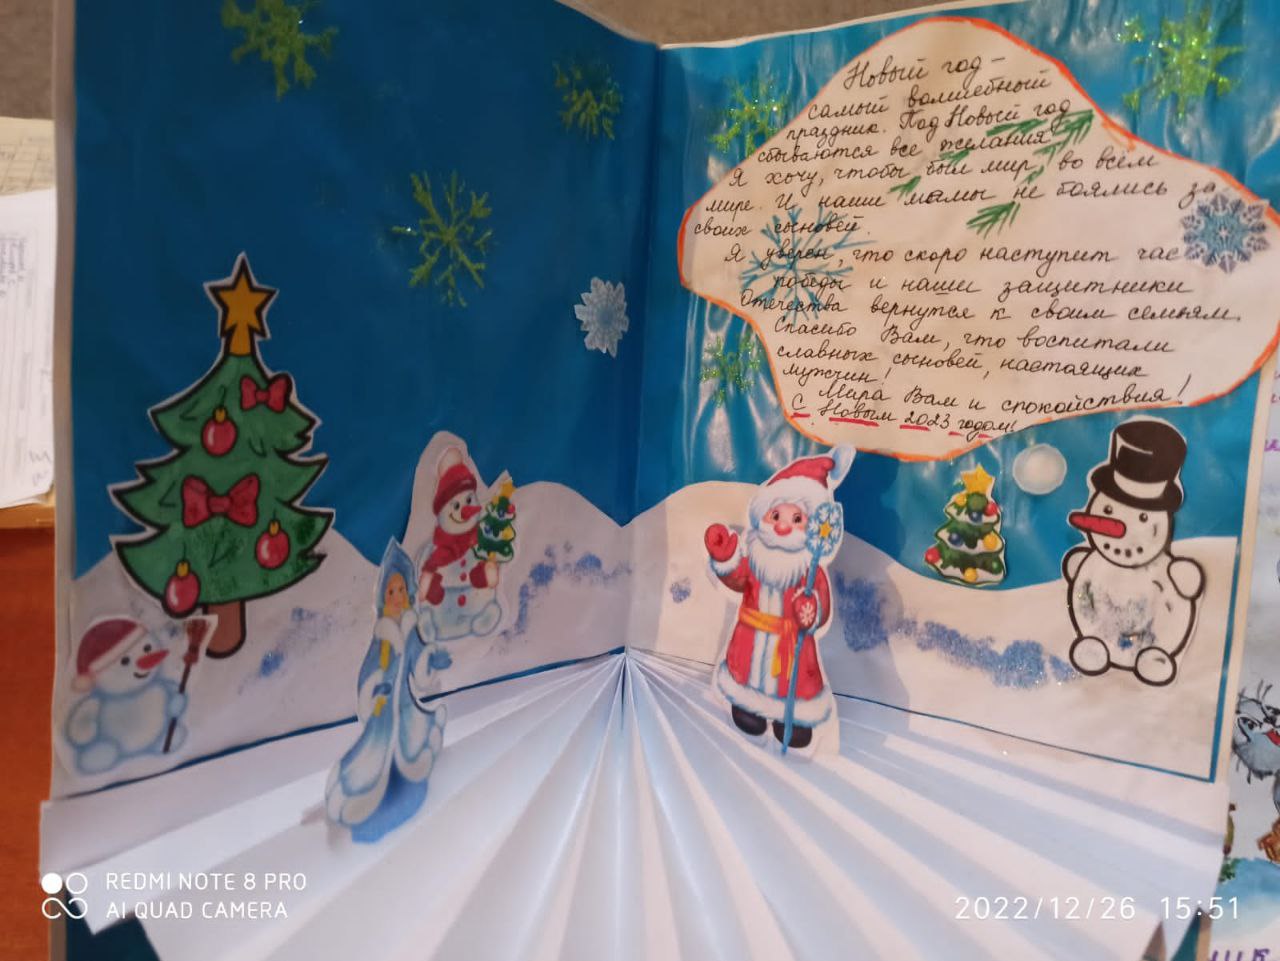 Школьники Каякентского района отправили новогодние открытки участникам СВО  | Информационный портал РИА Дагестан